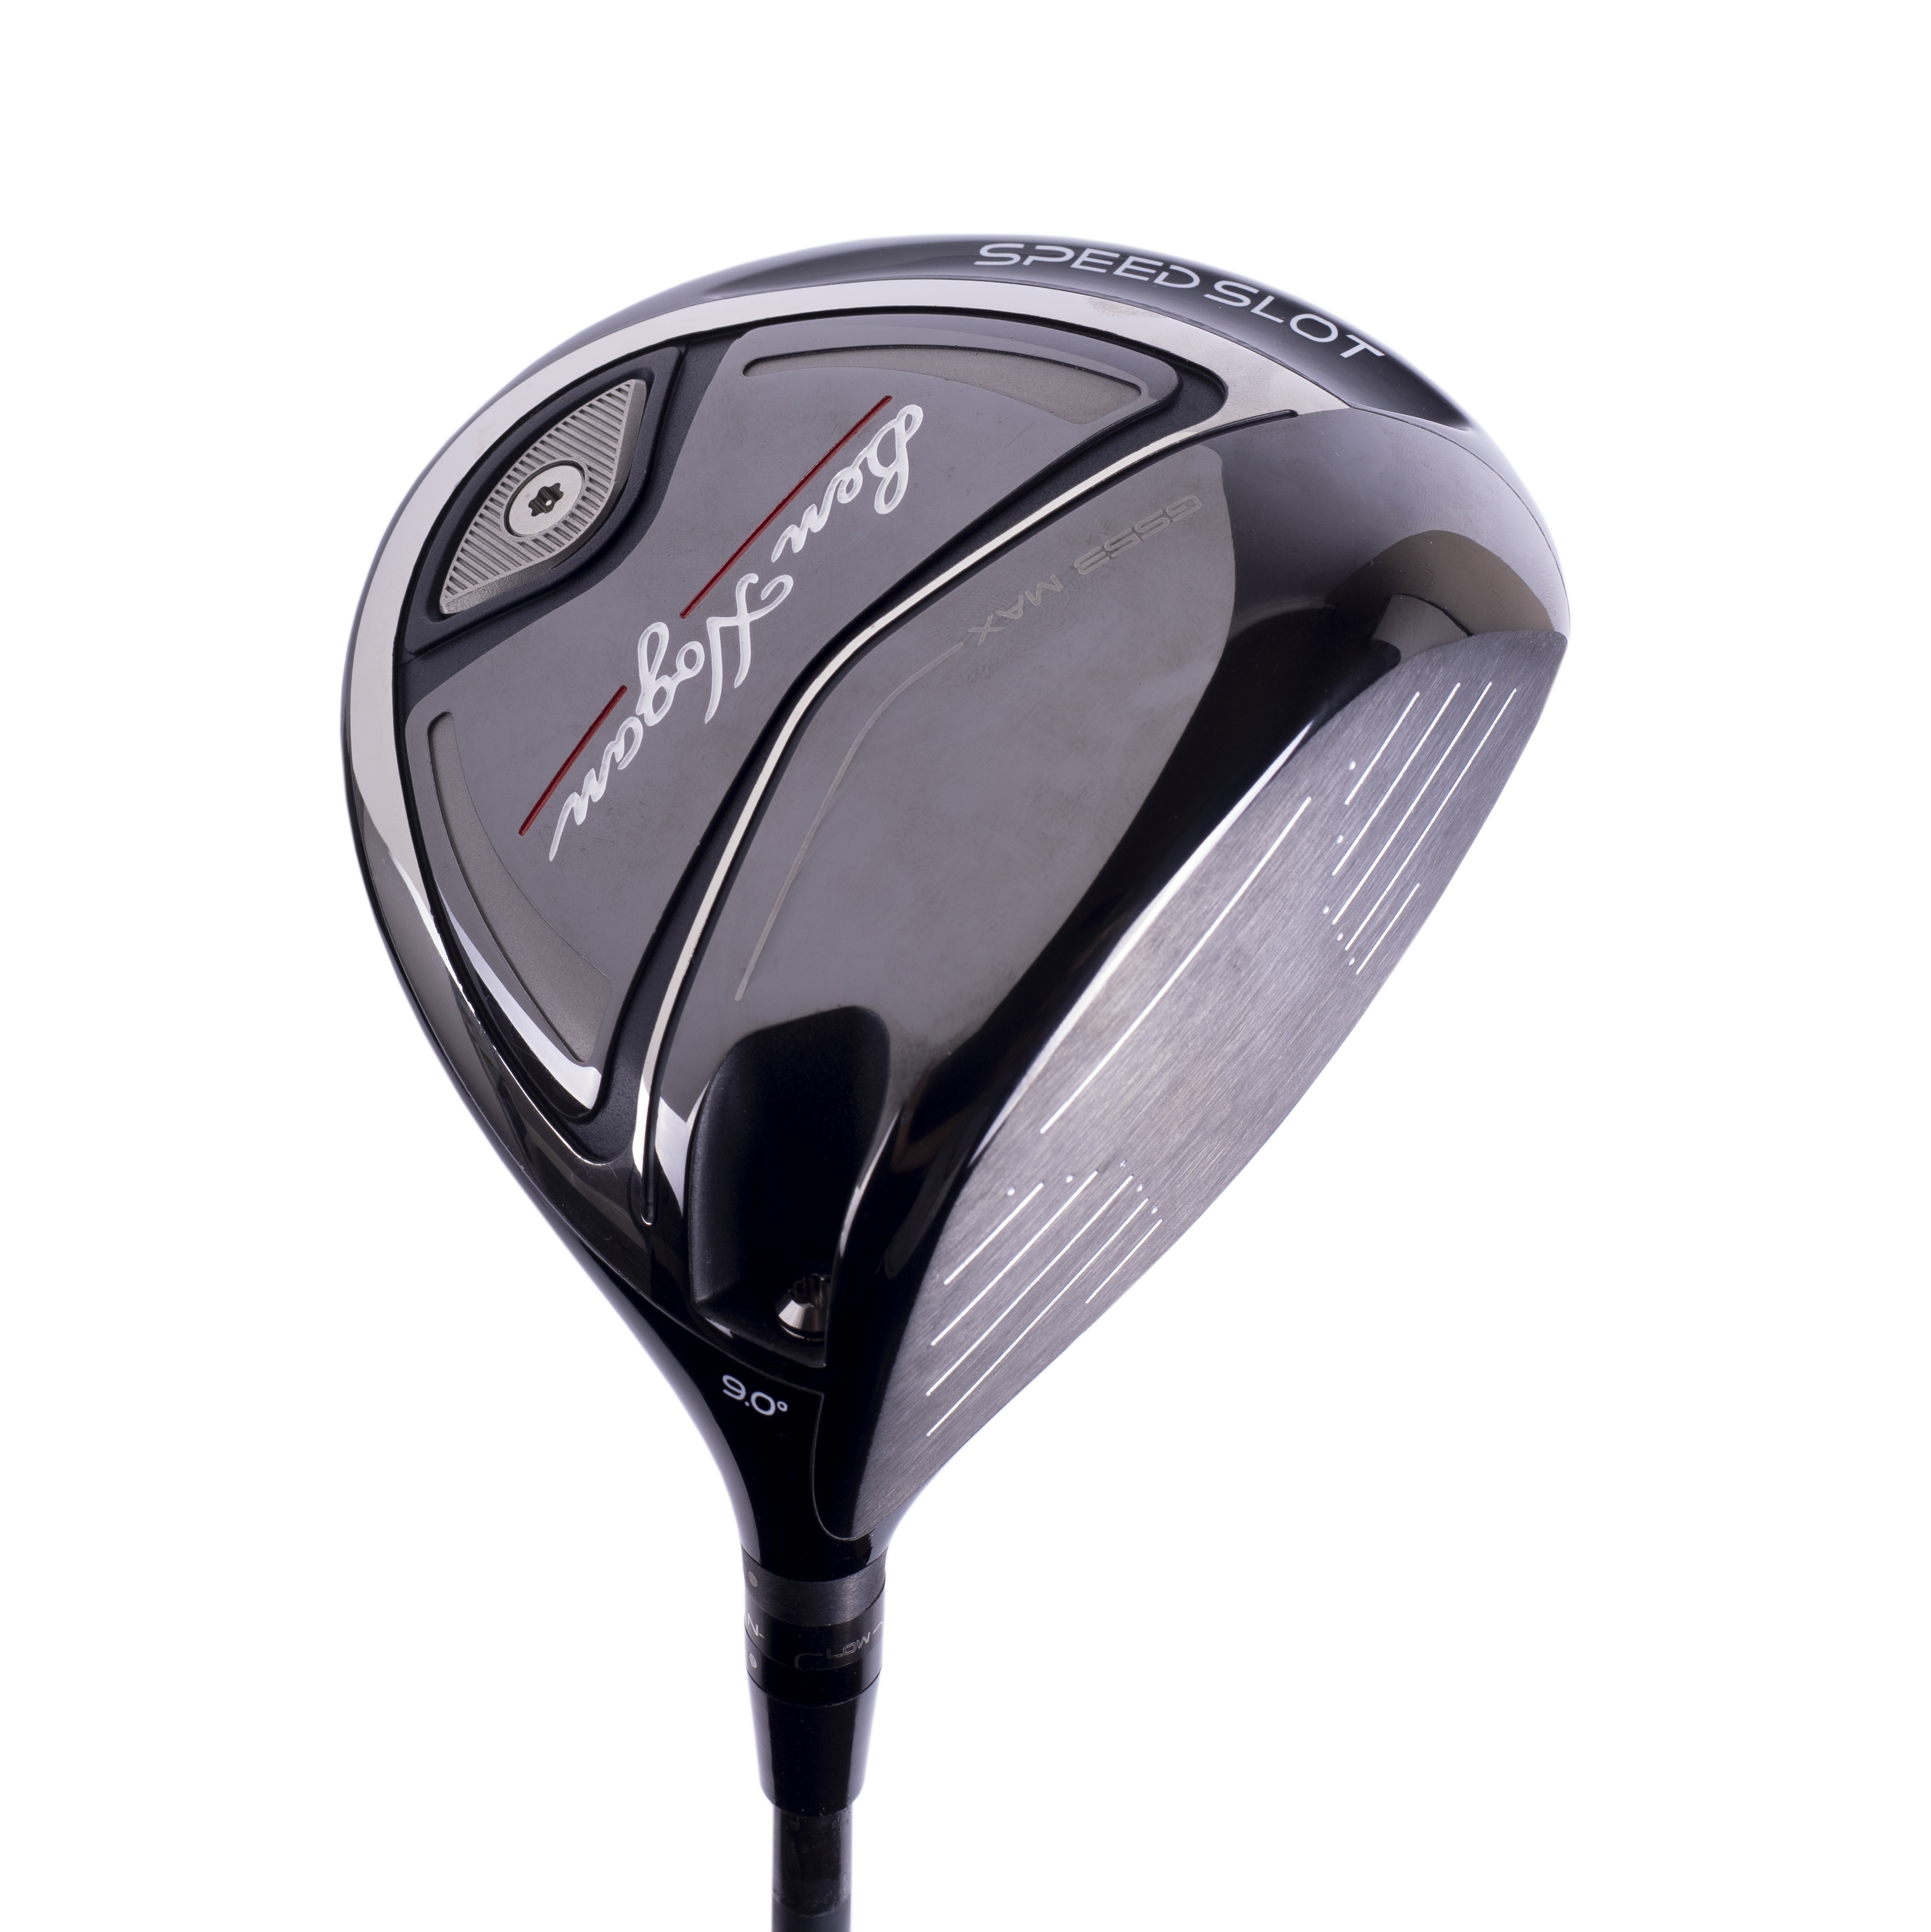 Ben Hogan Golf adds GS53 to driver lineup for higher more forgiving option Golf Equipment: Balls, Bags | GolfDigest.com